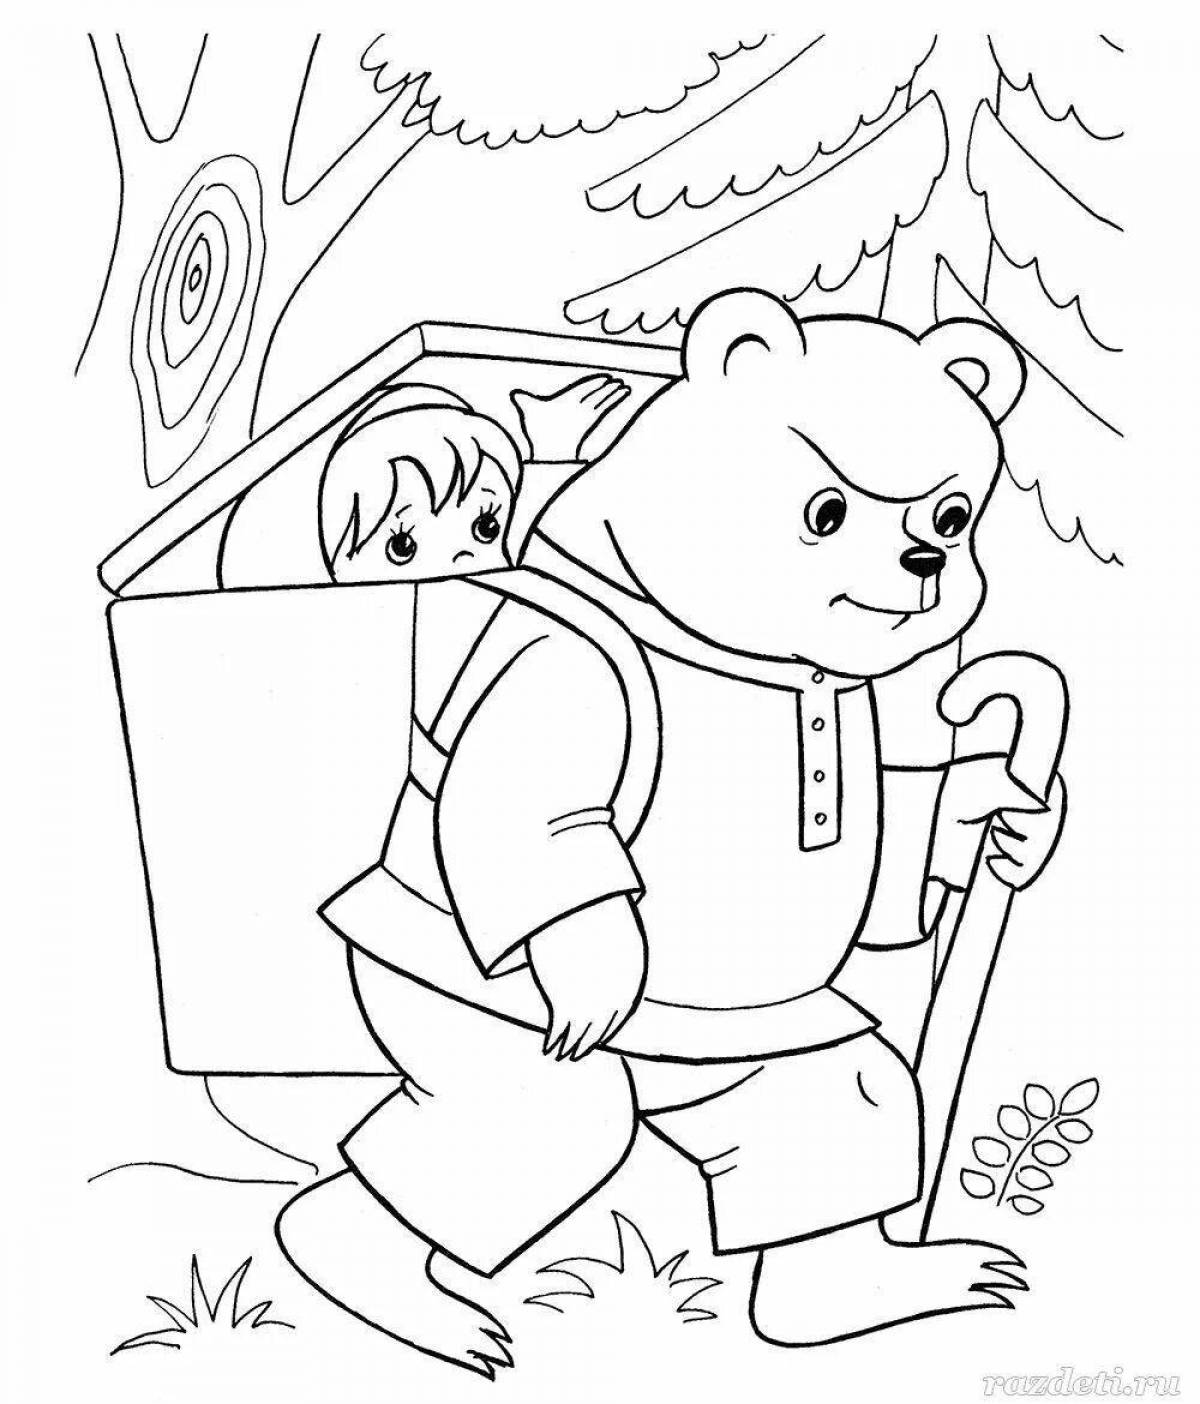 Веселая раскраска маша и медведь сказка для детей